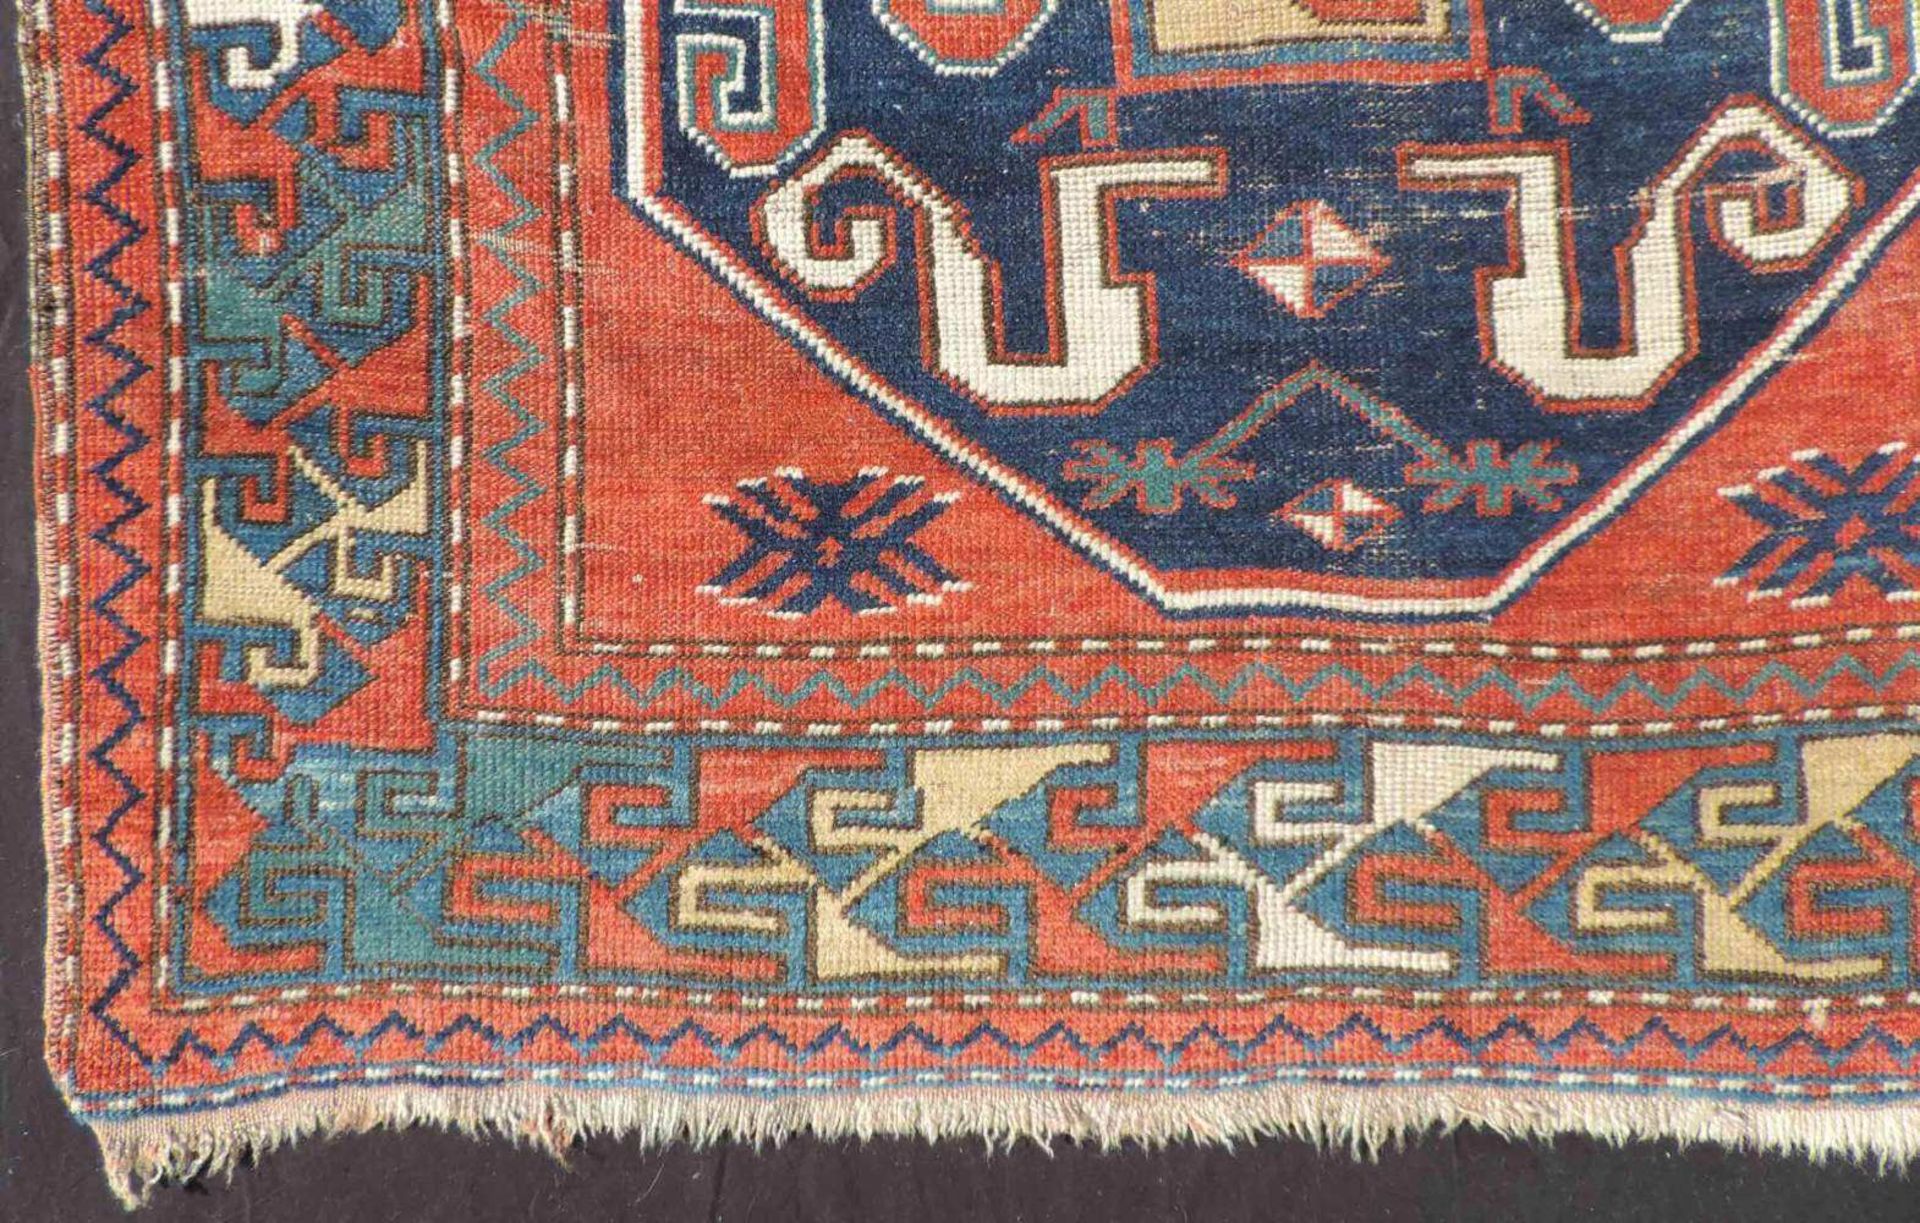 Chondoresk, Wolkenband- Kasak Teppich. Kaukasus. Alt, um 1900. 180 cm x 116 cm. Handgeknüpft. - Image 7 of 13